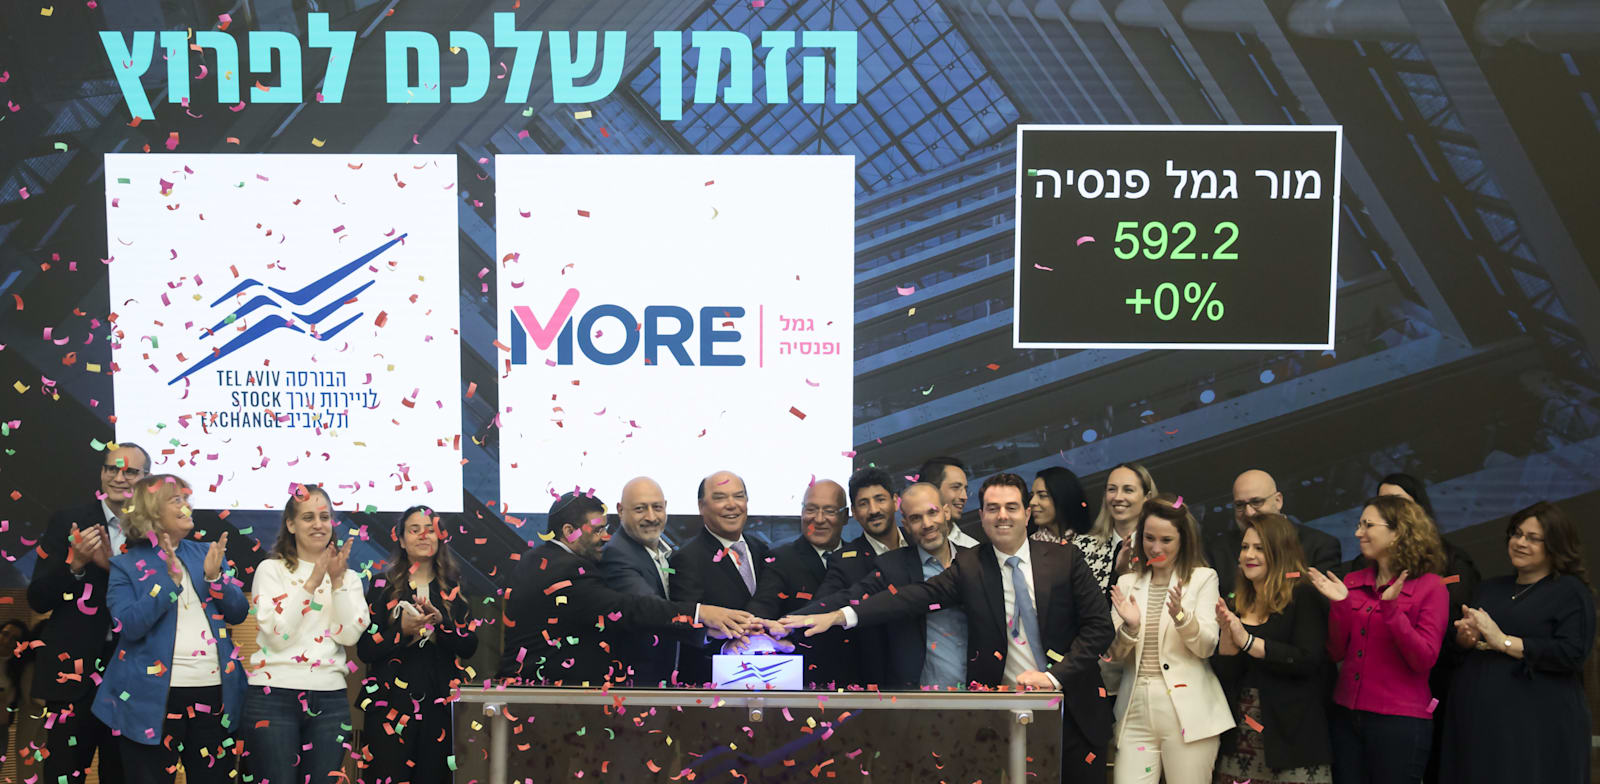 הנהלת מור גמל ופנסיה פותחת את המסחר לרגל הרישום בבורסה בתל אביב / צילום: אמיר לוי